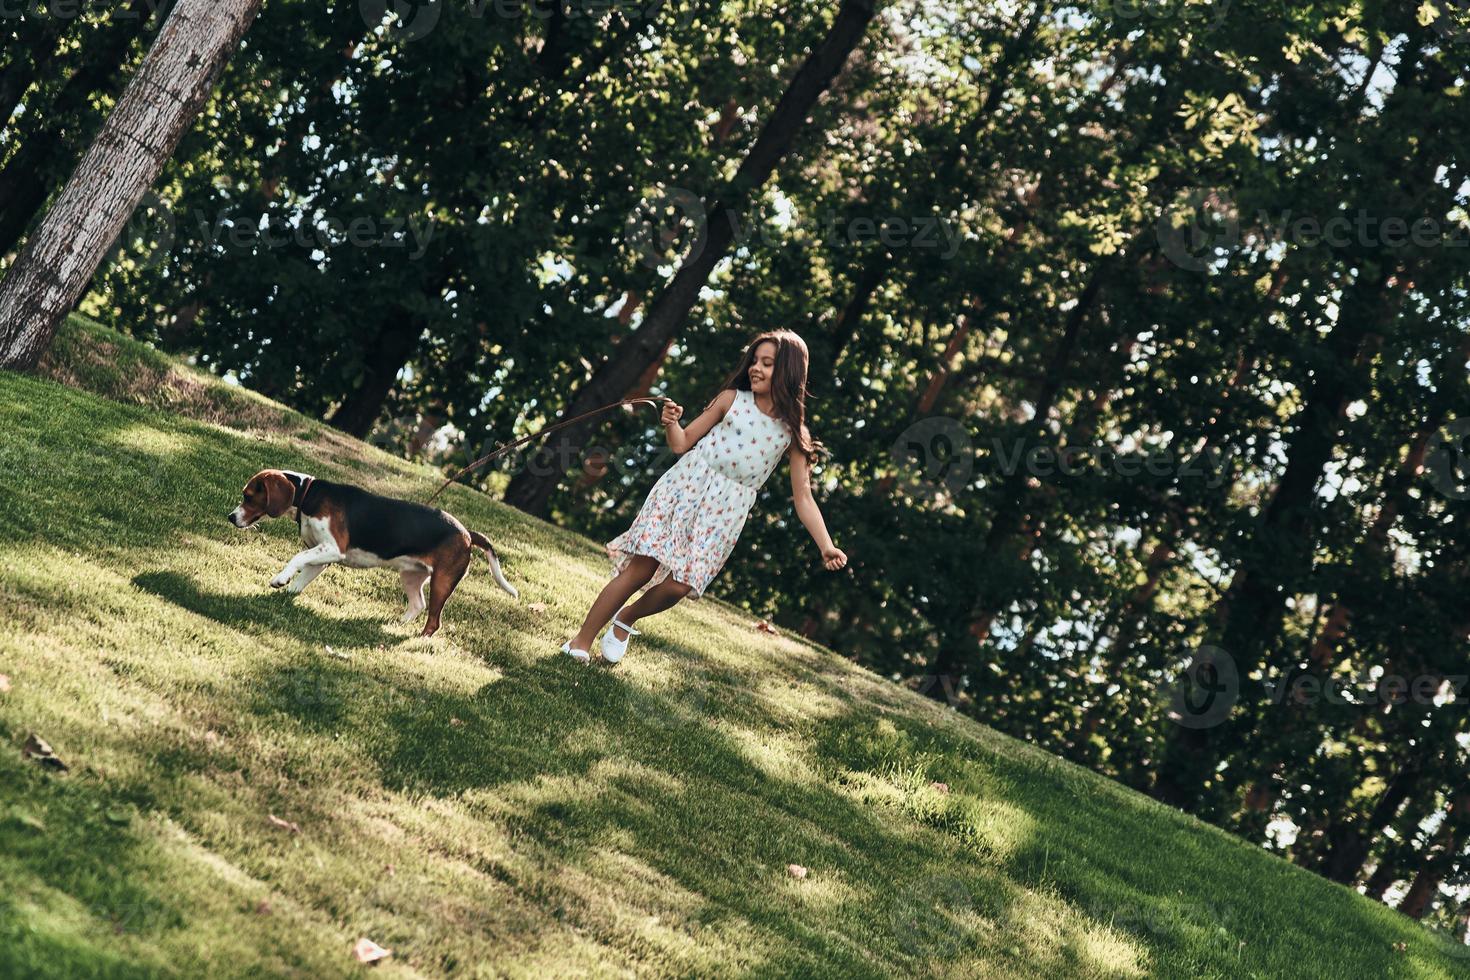 buscando aventuras juntos. toda la longitud de una linda niña jugando con su perro mientras corre al aire libre foto